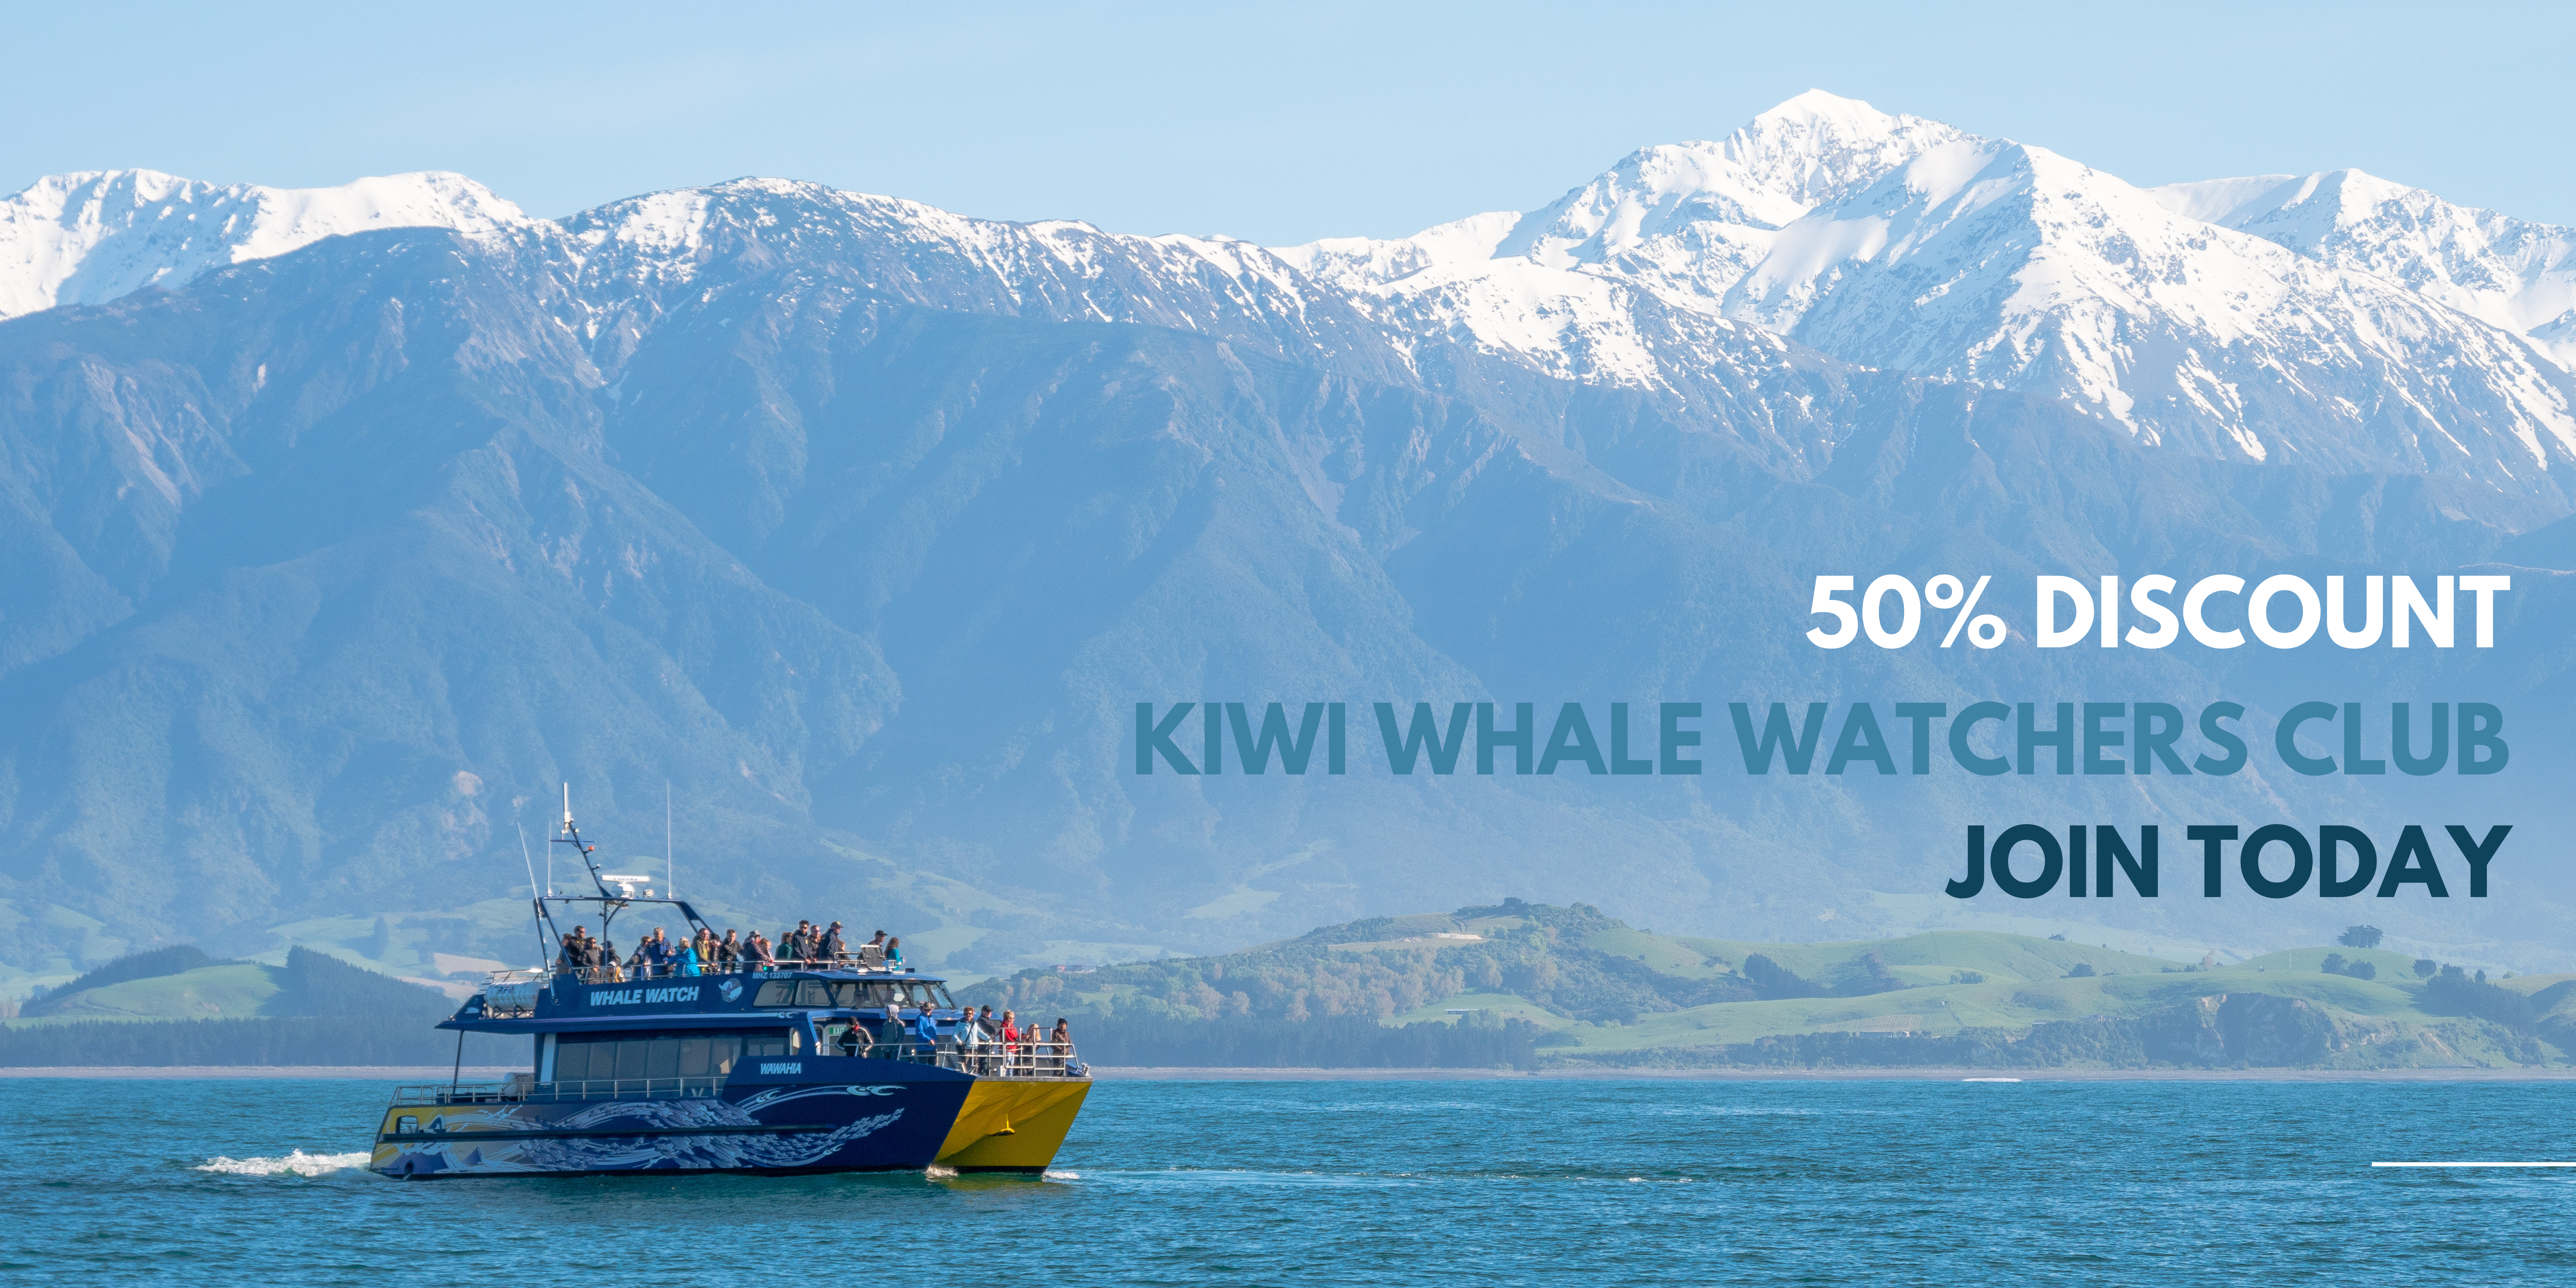 Kiwi Whale Watchers club